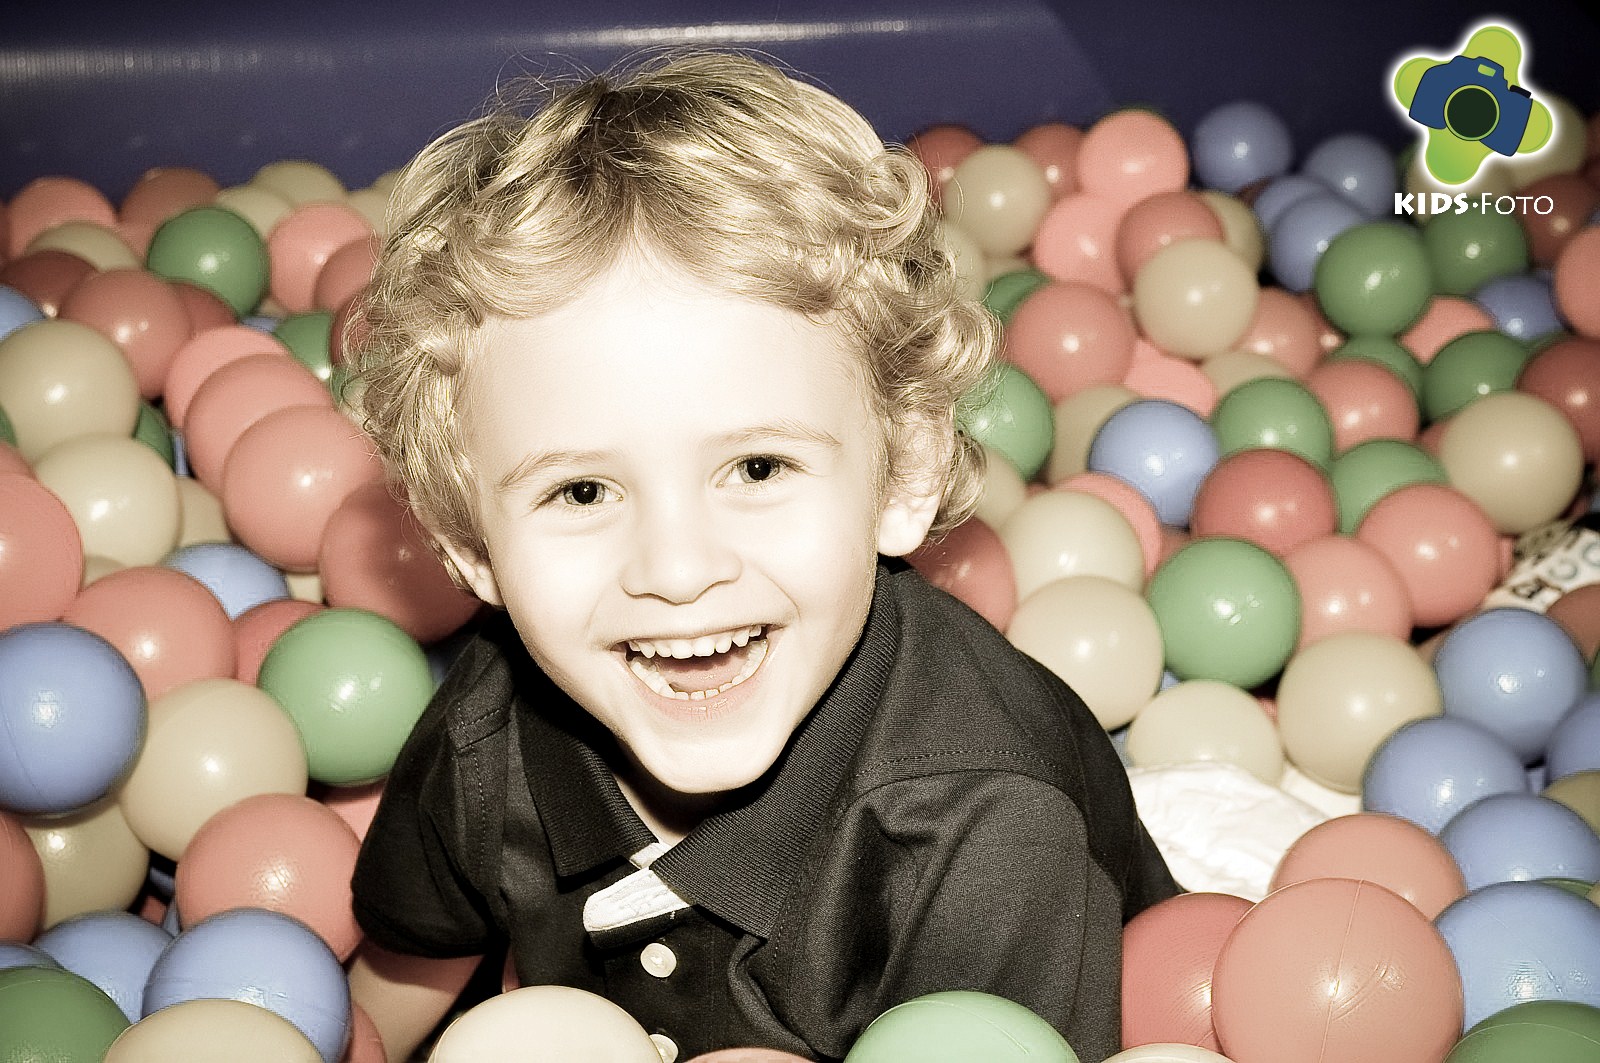 Festa de aniversário de 4 anos do Enrico, realizada na Mega Festa Garden, por Kids Foto